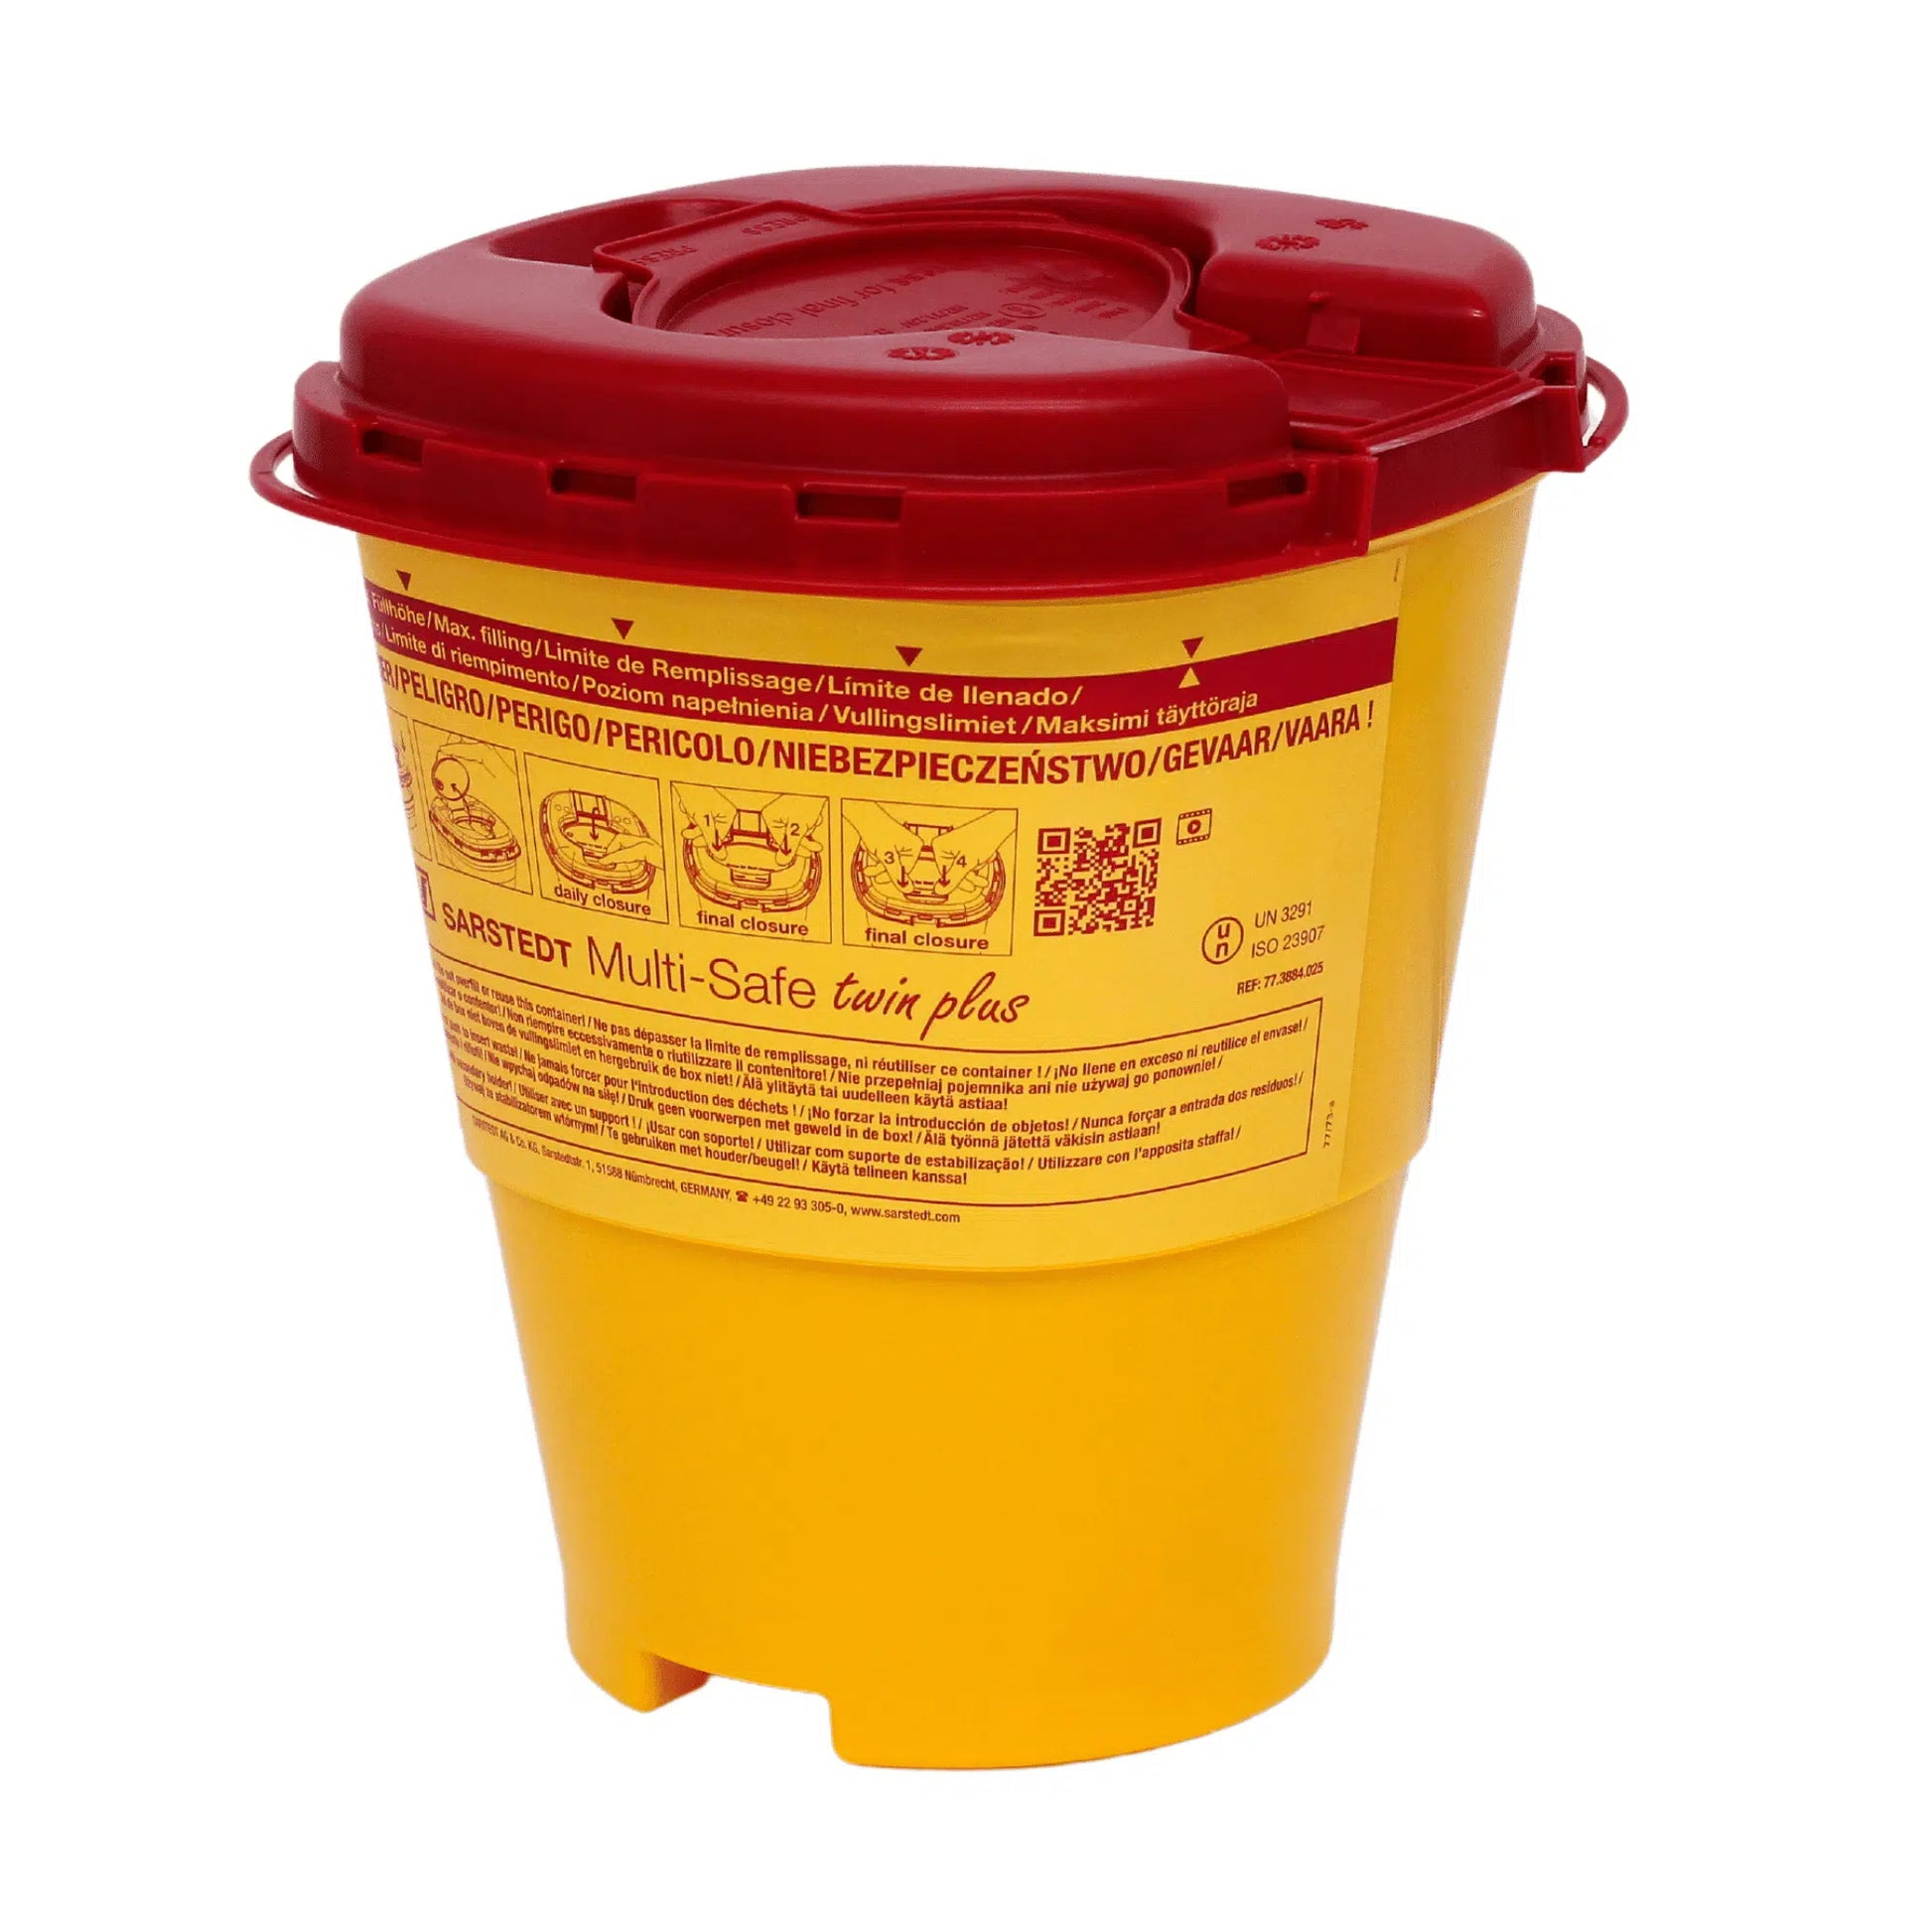 Gelber Multi-Safe twin plus Abwurfbehälter für Kanülen mit rotem Deckel, ausgestattet mit Warnhinweisen und mehrsprachigen Gebrauchsanweisungen für die Meditrade GmbH.